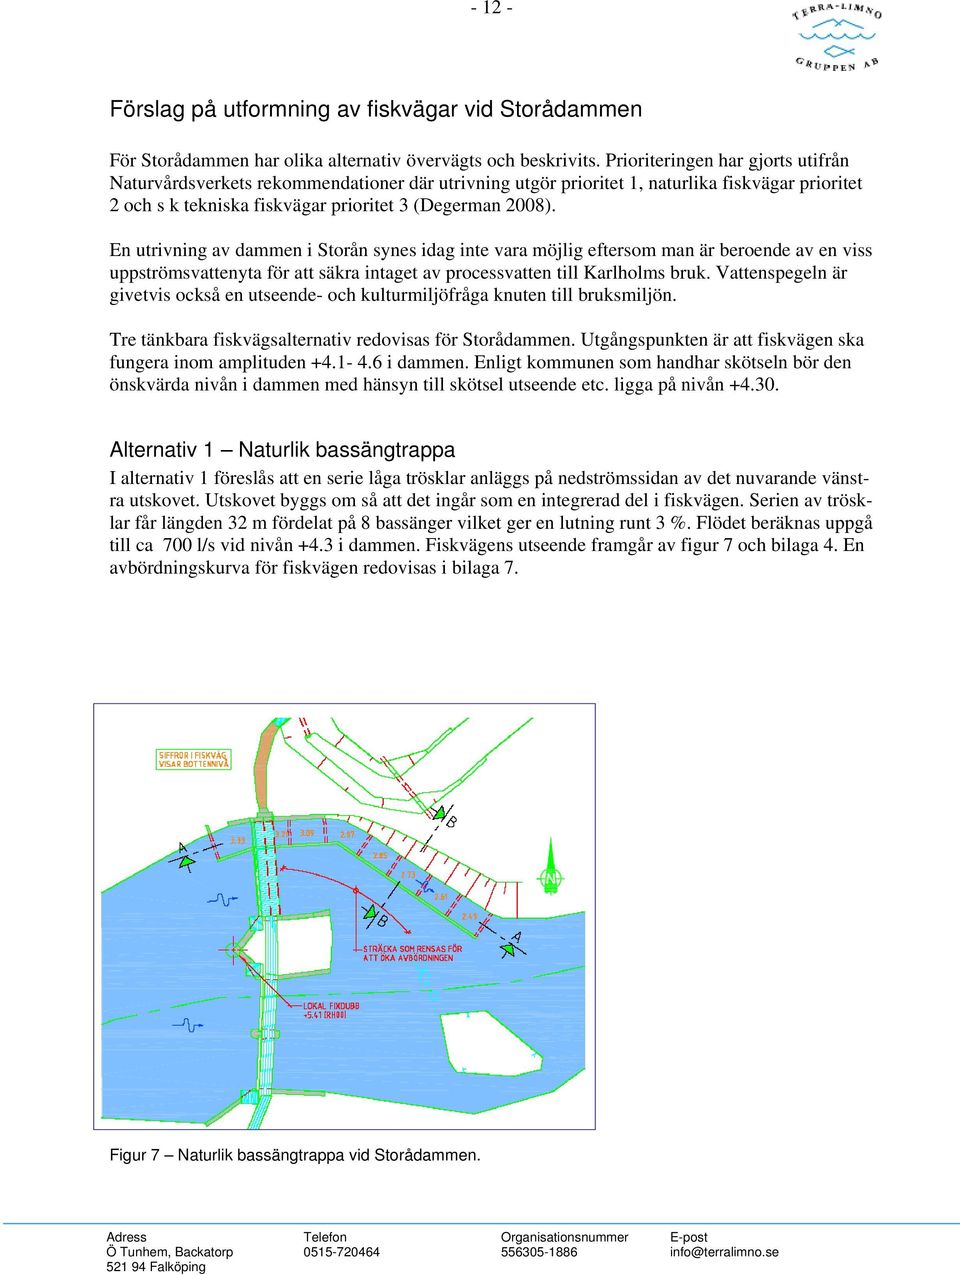 En utrivning av dammen i Storån synes idag inte vara möjlig eftersom man är beroende av en viss uppströmsvattenyta för att säkra intaget av processvatten till Karlholms bruk.